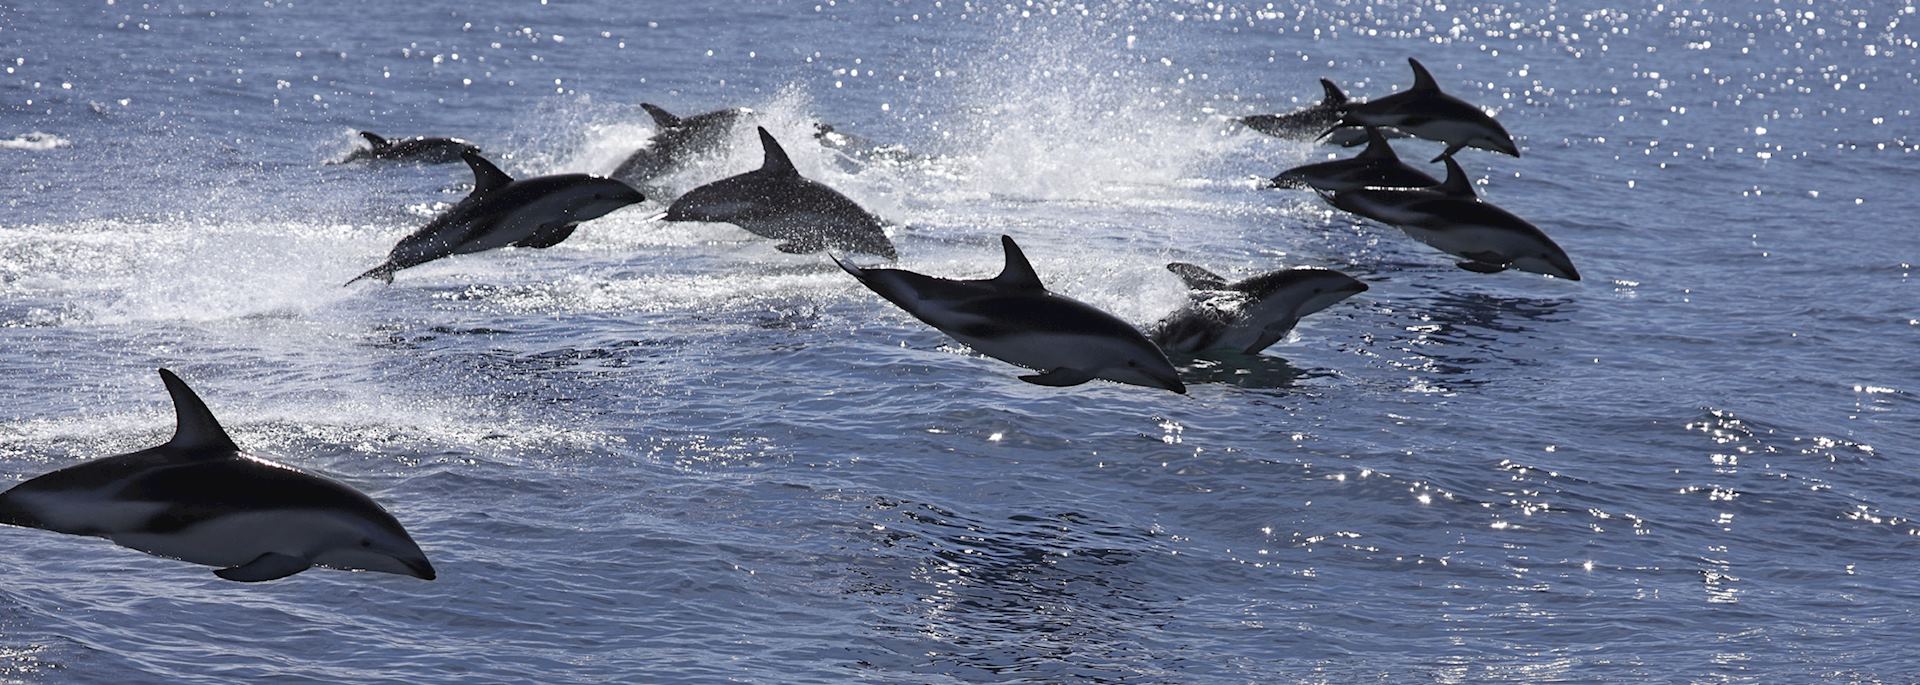 Dusky dolphin pod, Kaikoura